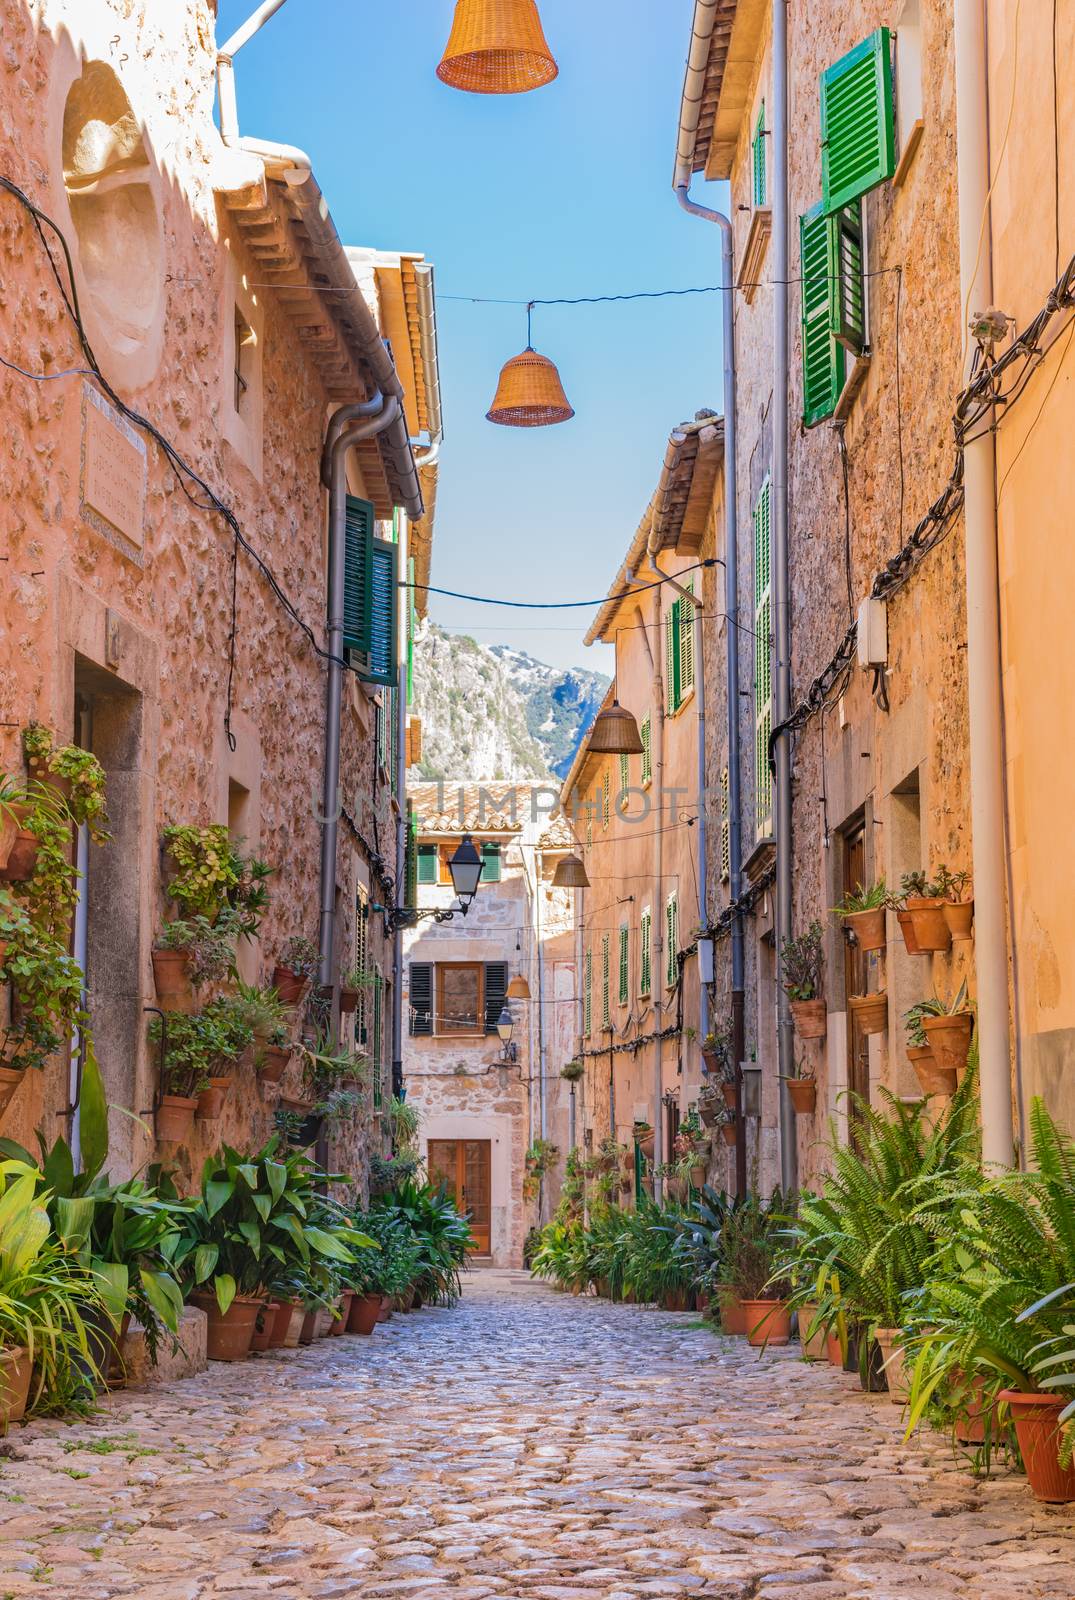 Beautiful street at the mediterranean village of Valldemossa on Majorca Spain 

